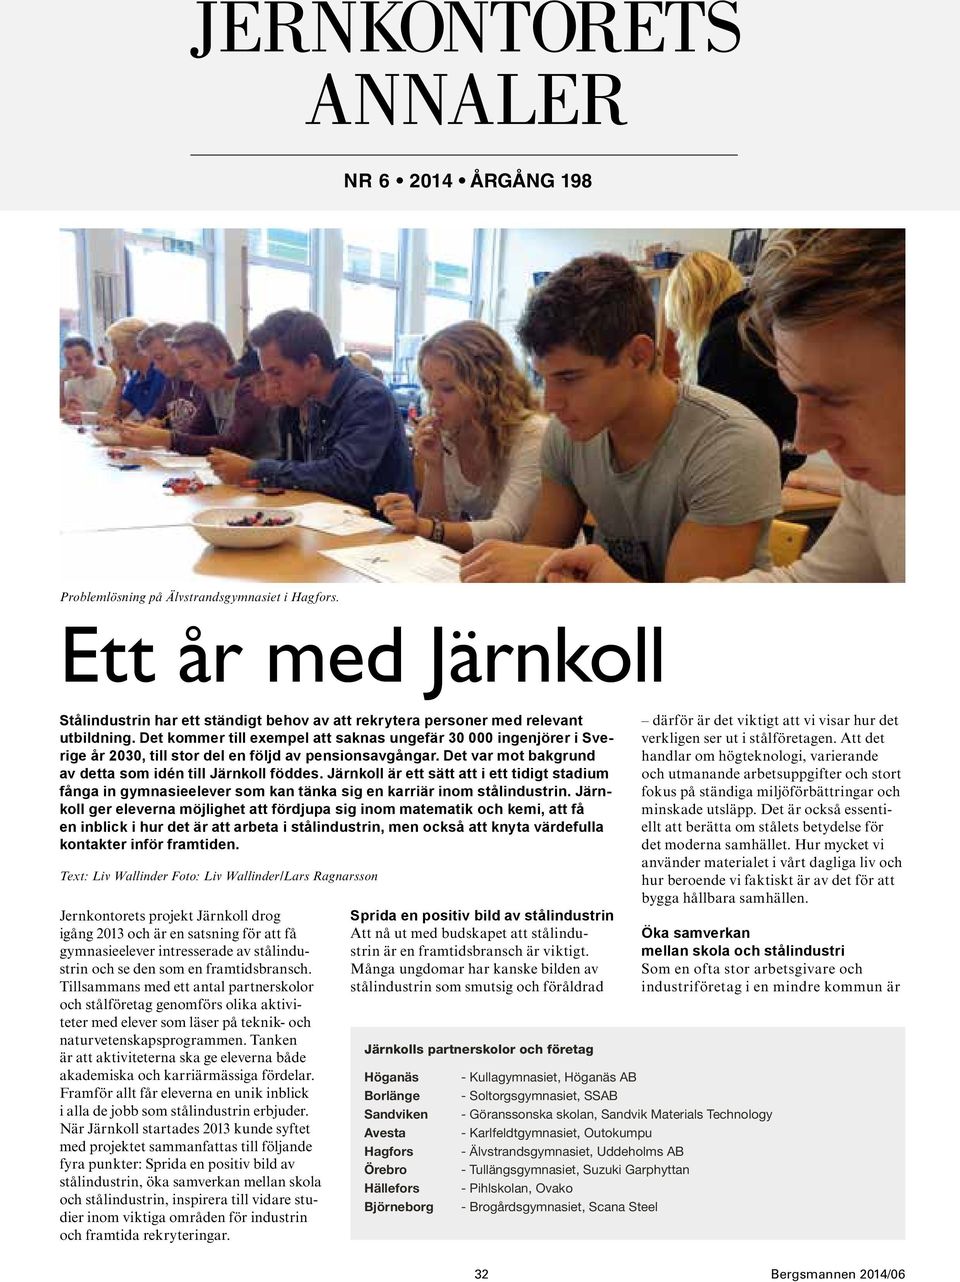 Järnkoll är ett sätt att i ett tidigt stadium fånga in gymnasieelever som kan tänka sig en karriär inom stålindustrin.